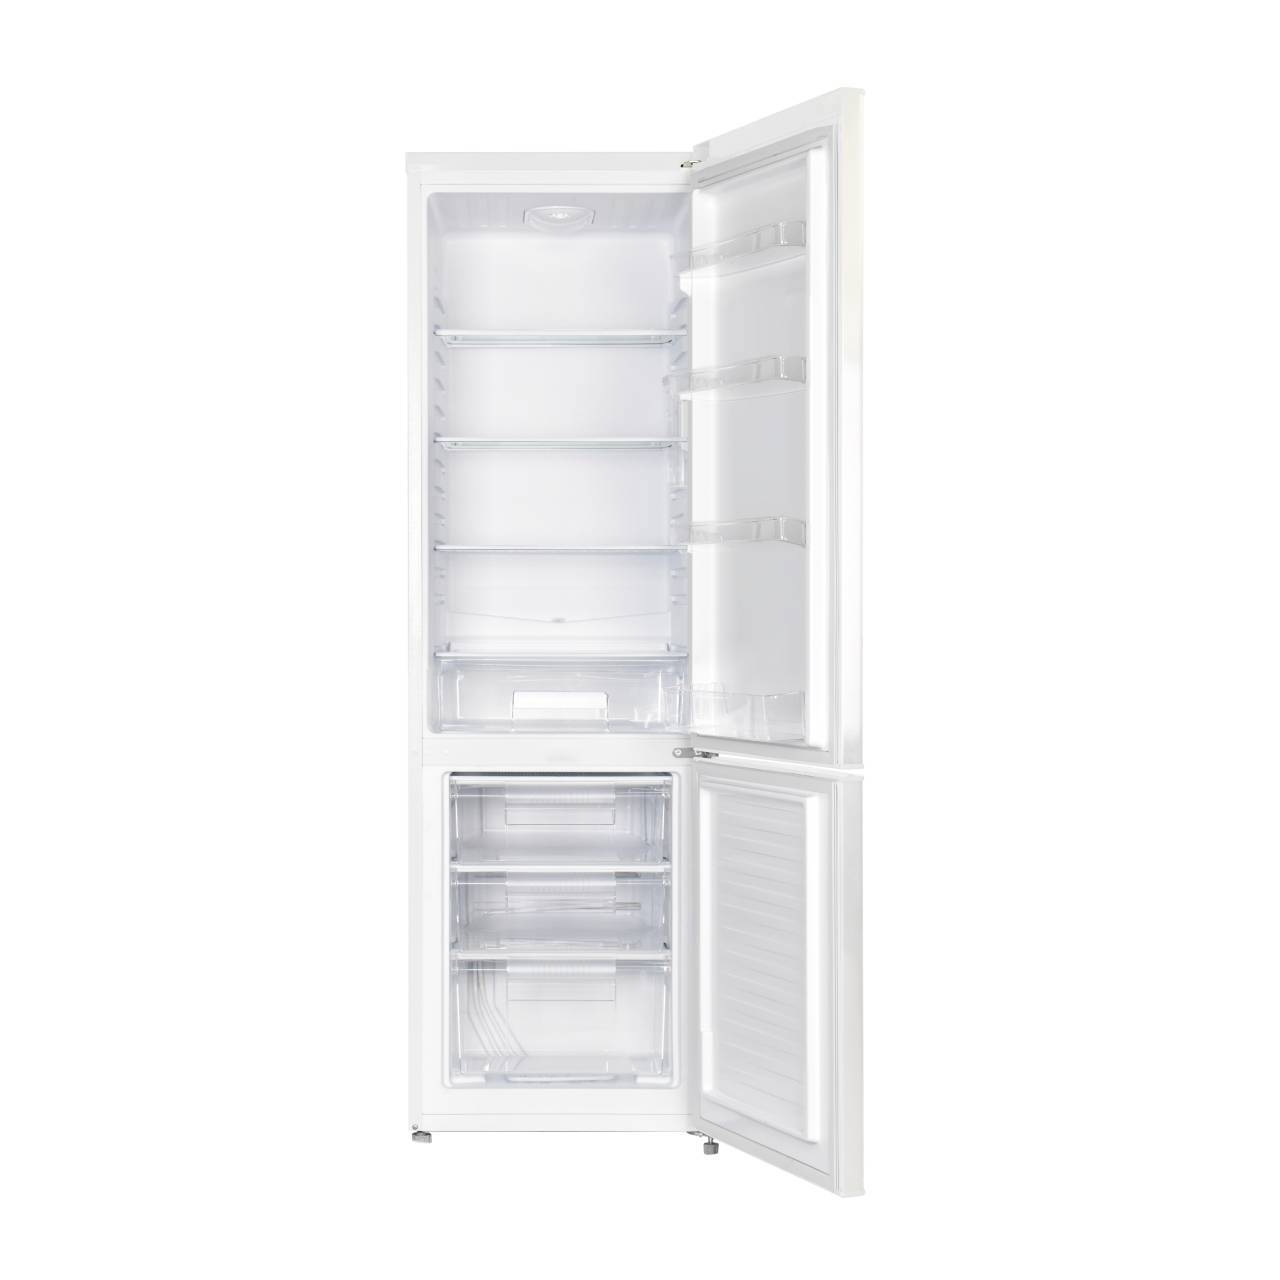 90949774 Отдельностоящий холодильник CBM252DW 54.5x180 см цвет белый STLM-0426980 CHIQ